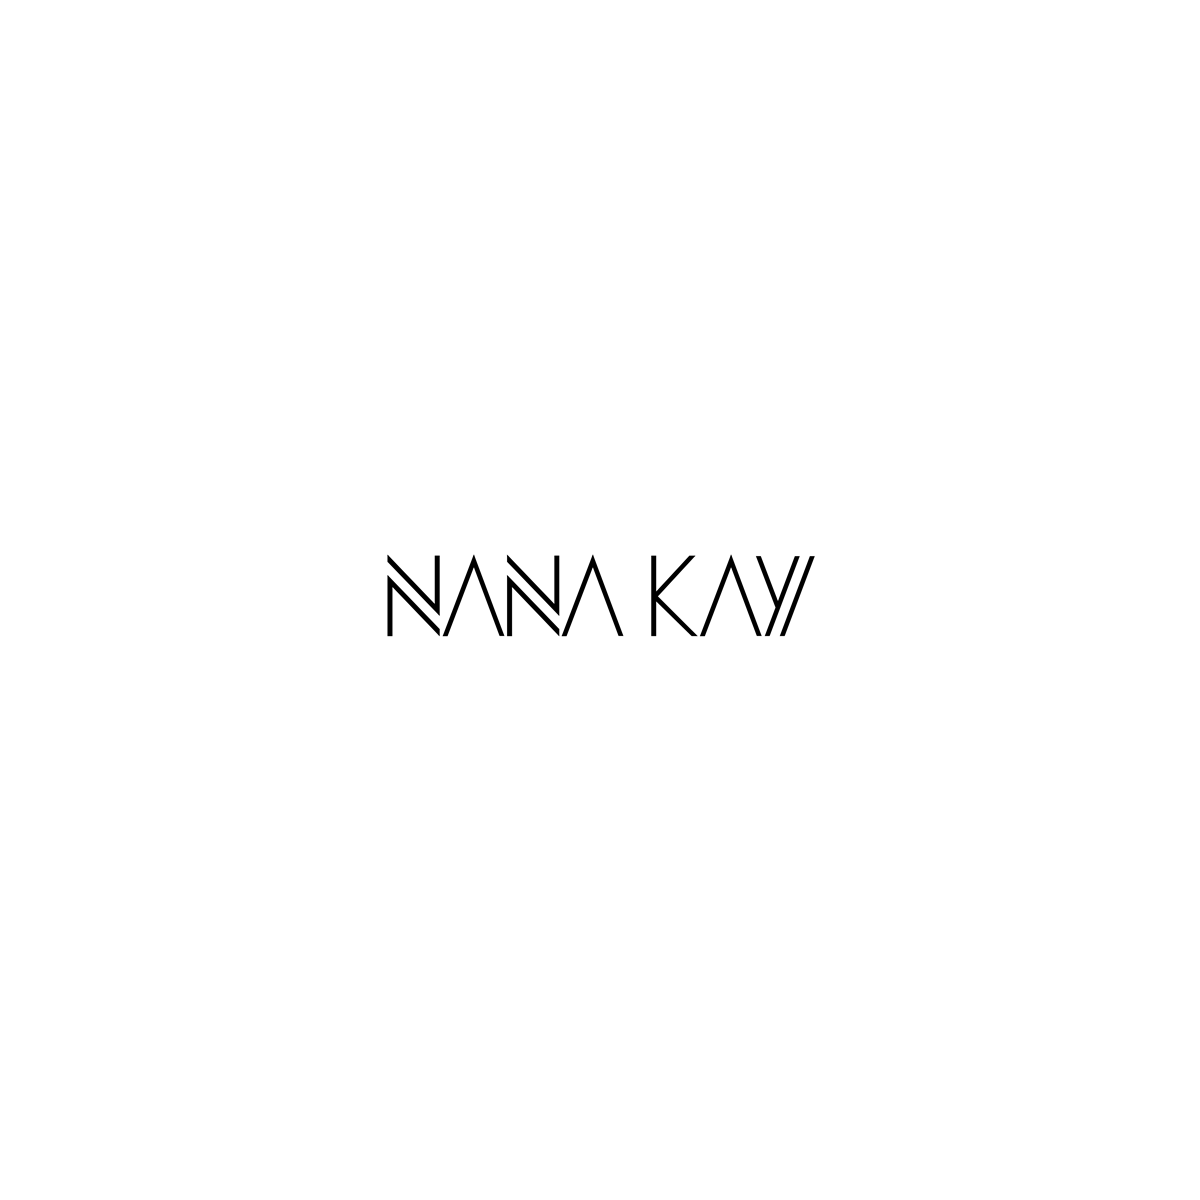 Nana Kay